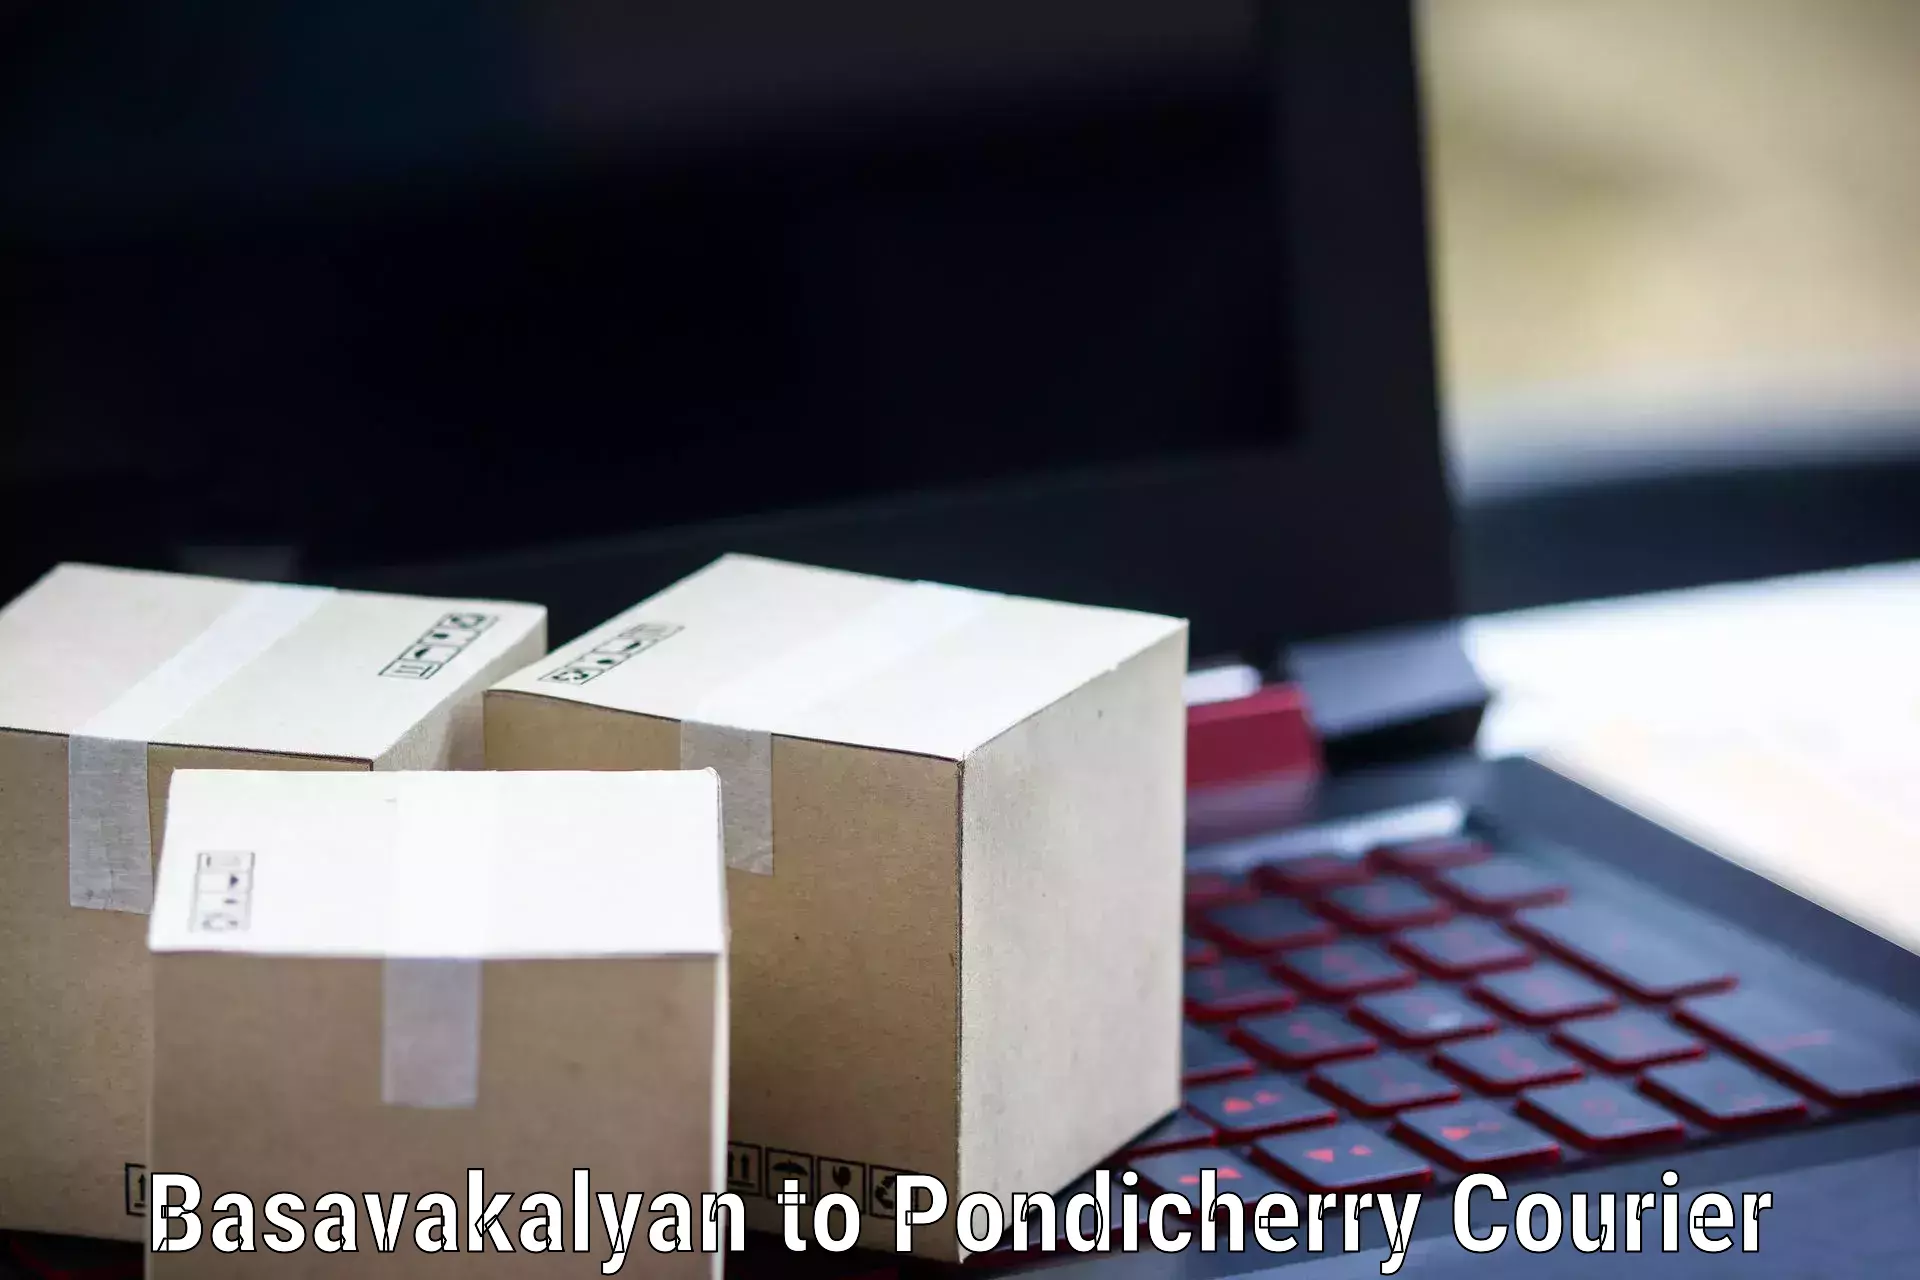 Efficient order fulfillment Basavakalyan to Pondicherry